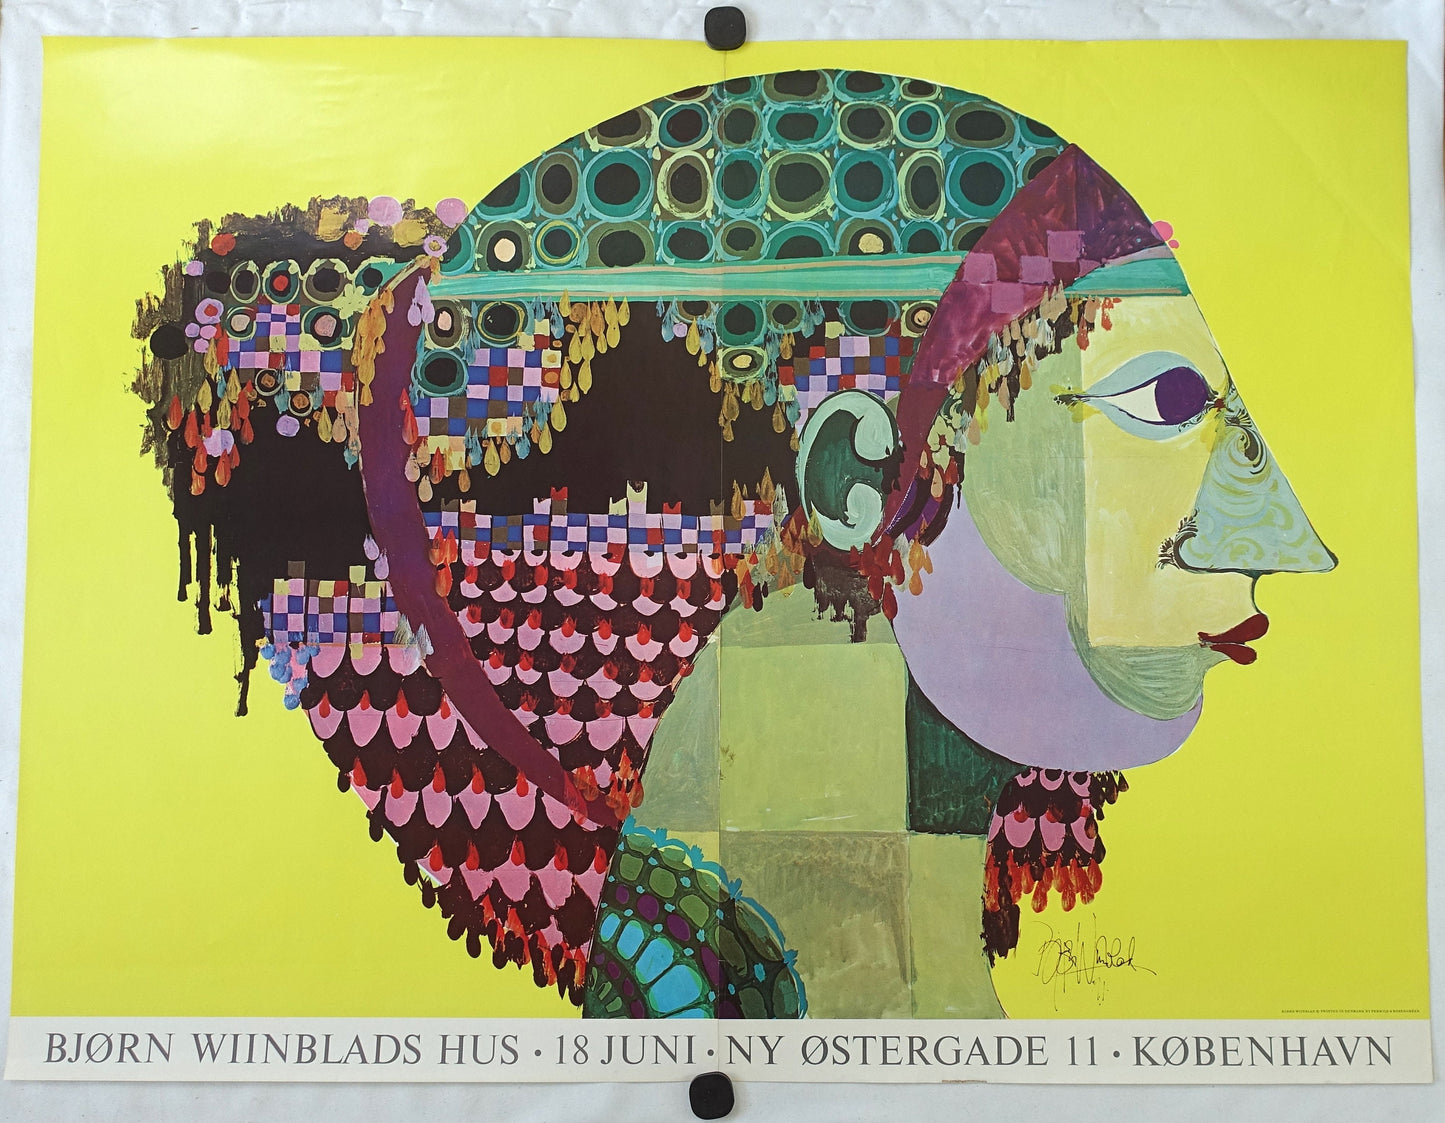 1971 Wiinblad's 1001 Nights "Portrait of Scheherazade" (Huge Poster) - Original Vintage Poster